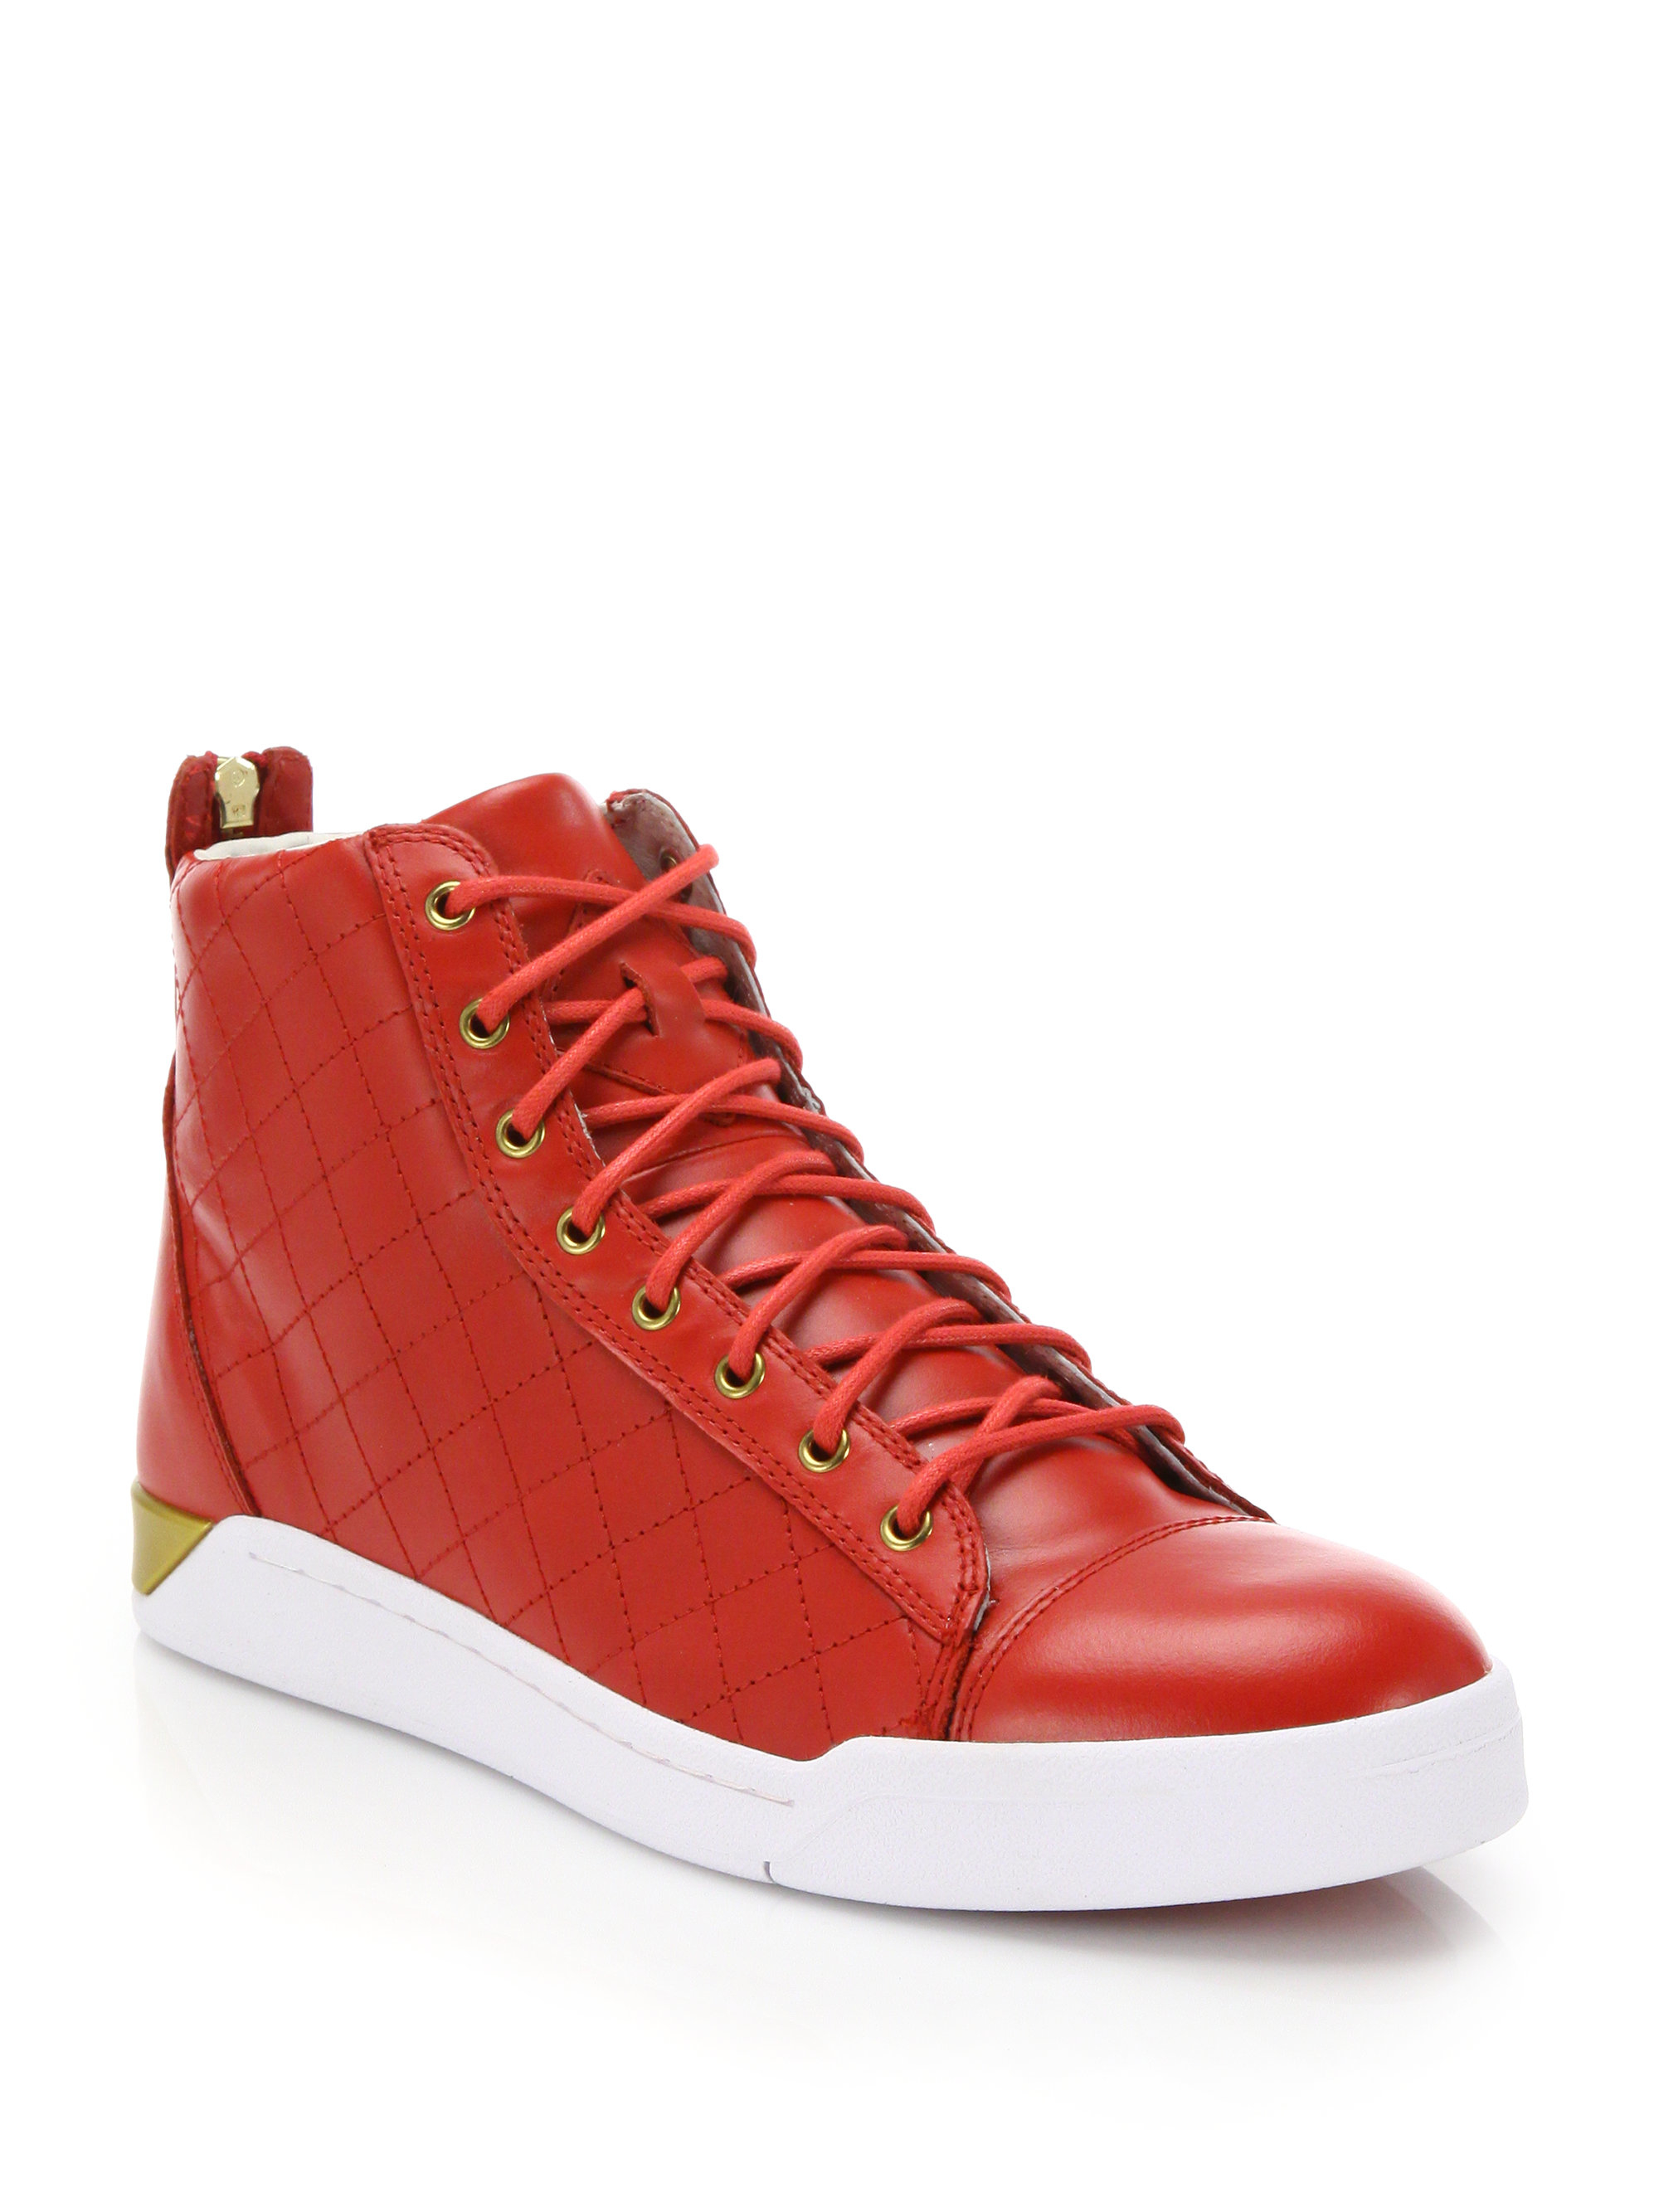 Diesel Tempus Diamond Leather High-top Sneakers in Red | Lyst